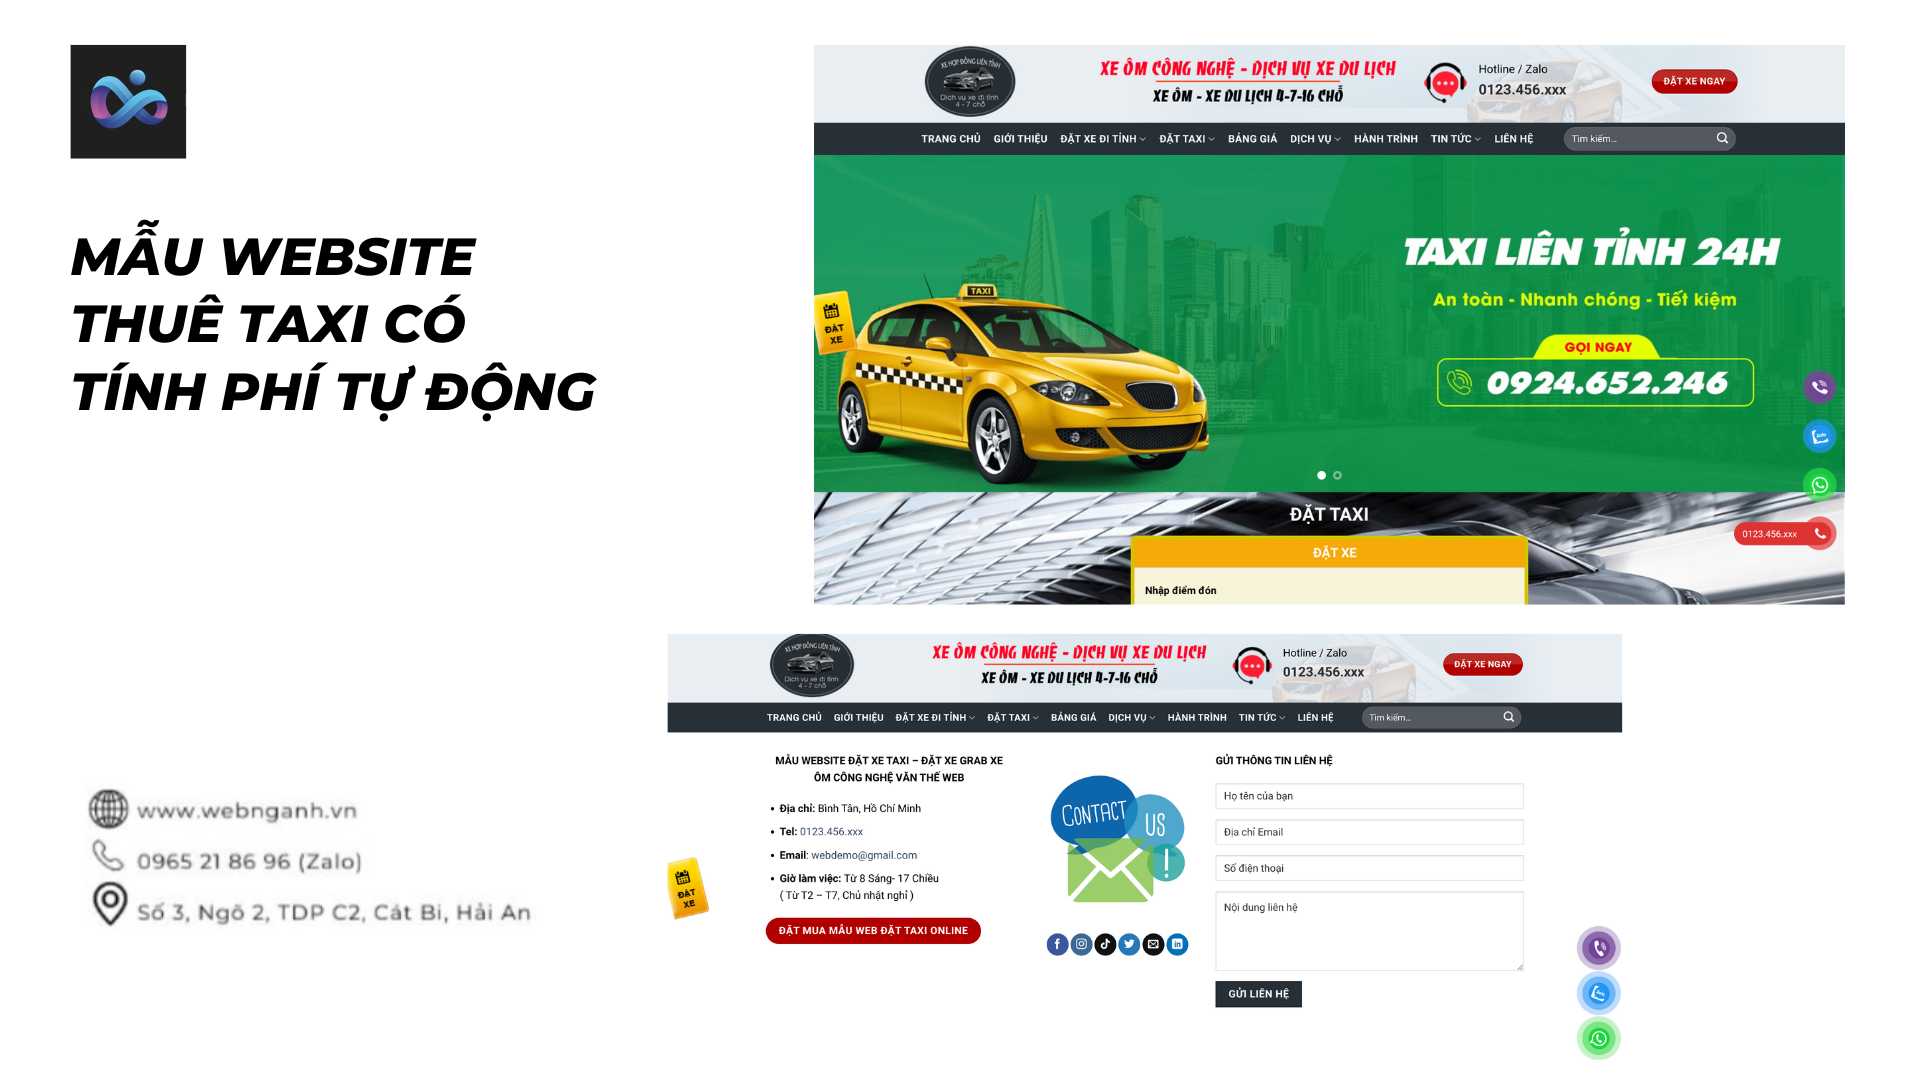 Mẫu Website thuê taxi có tính phí tự động